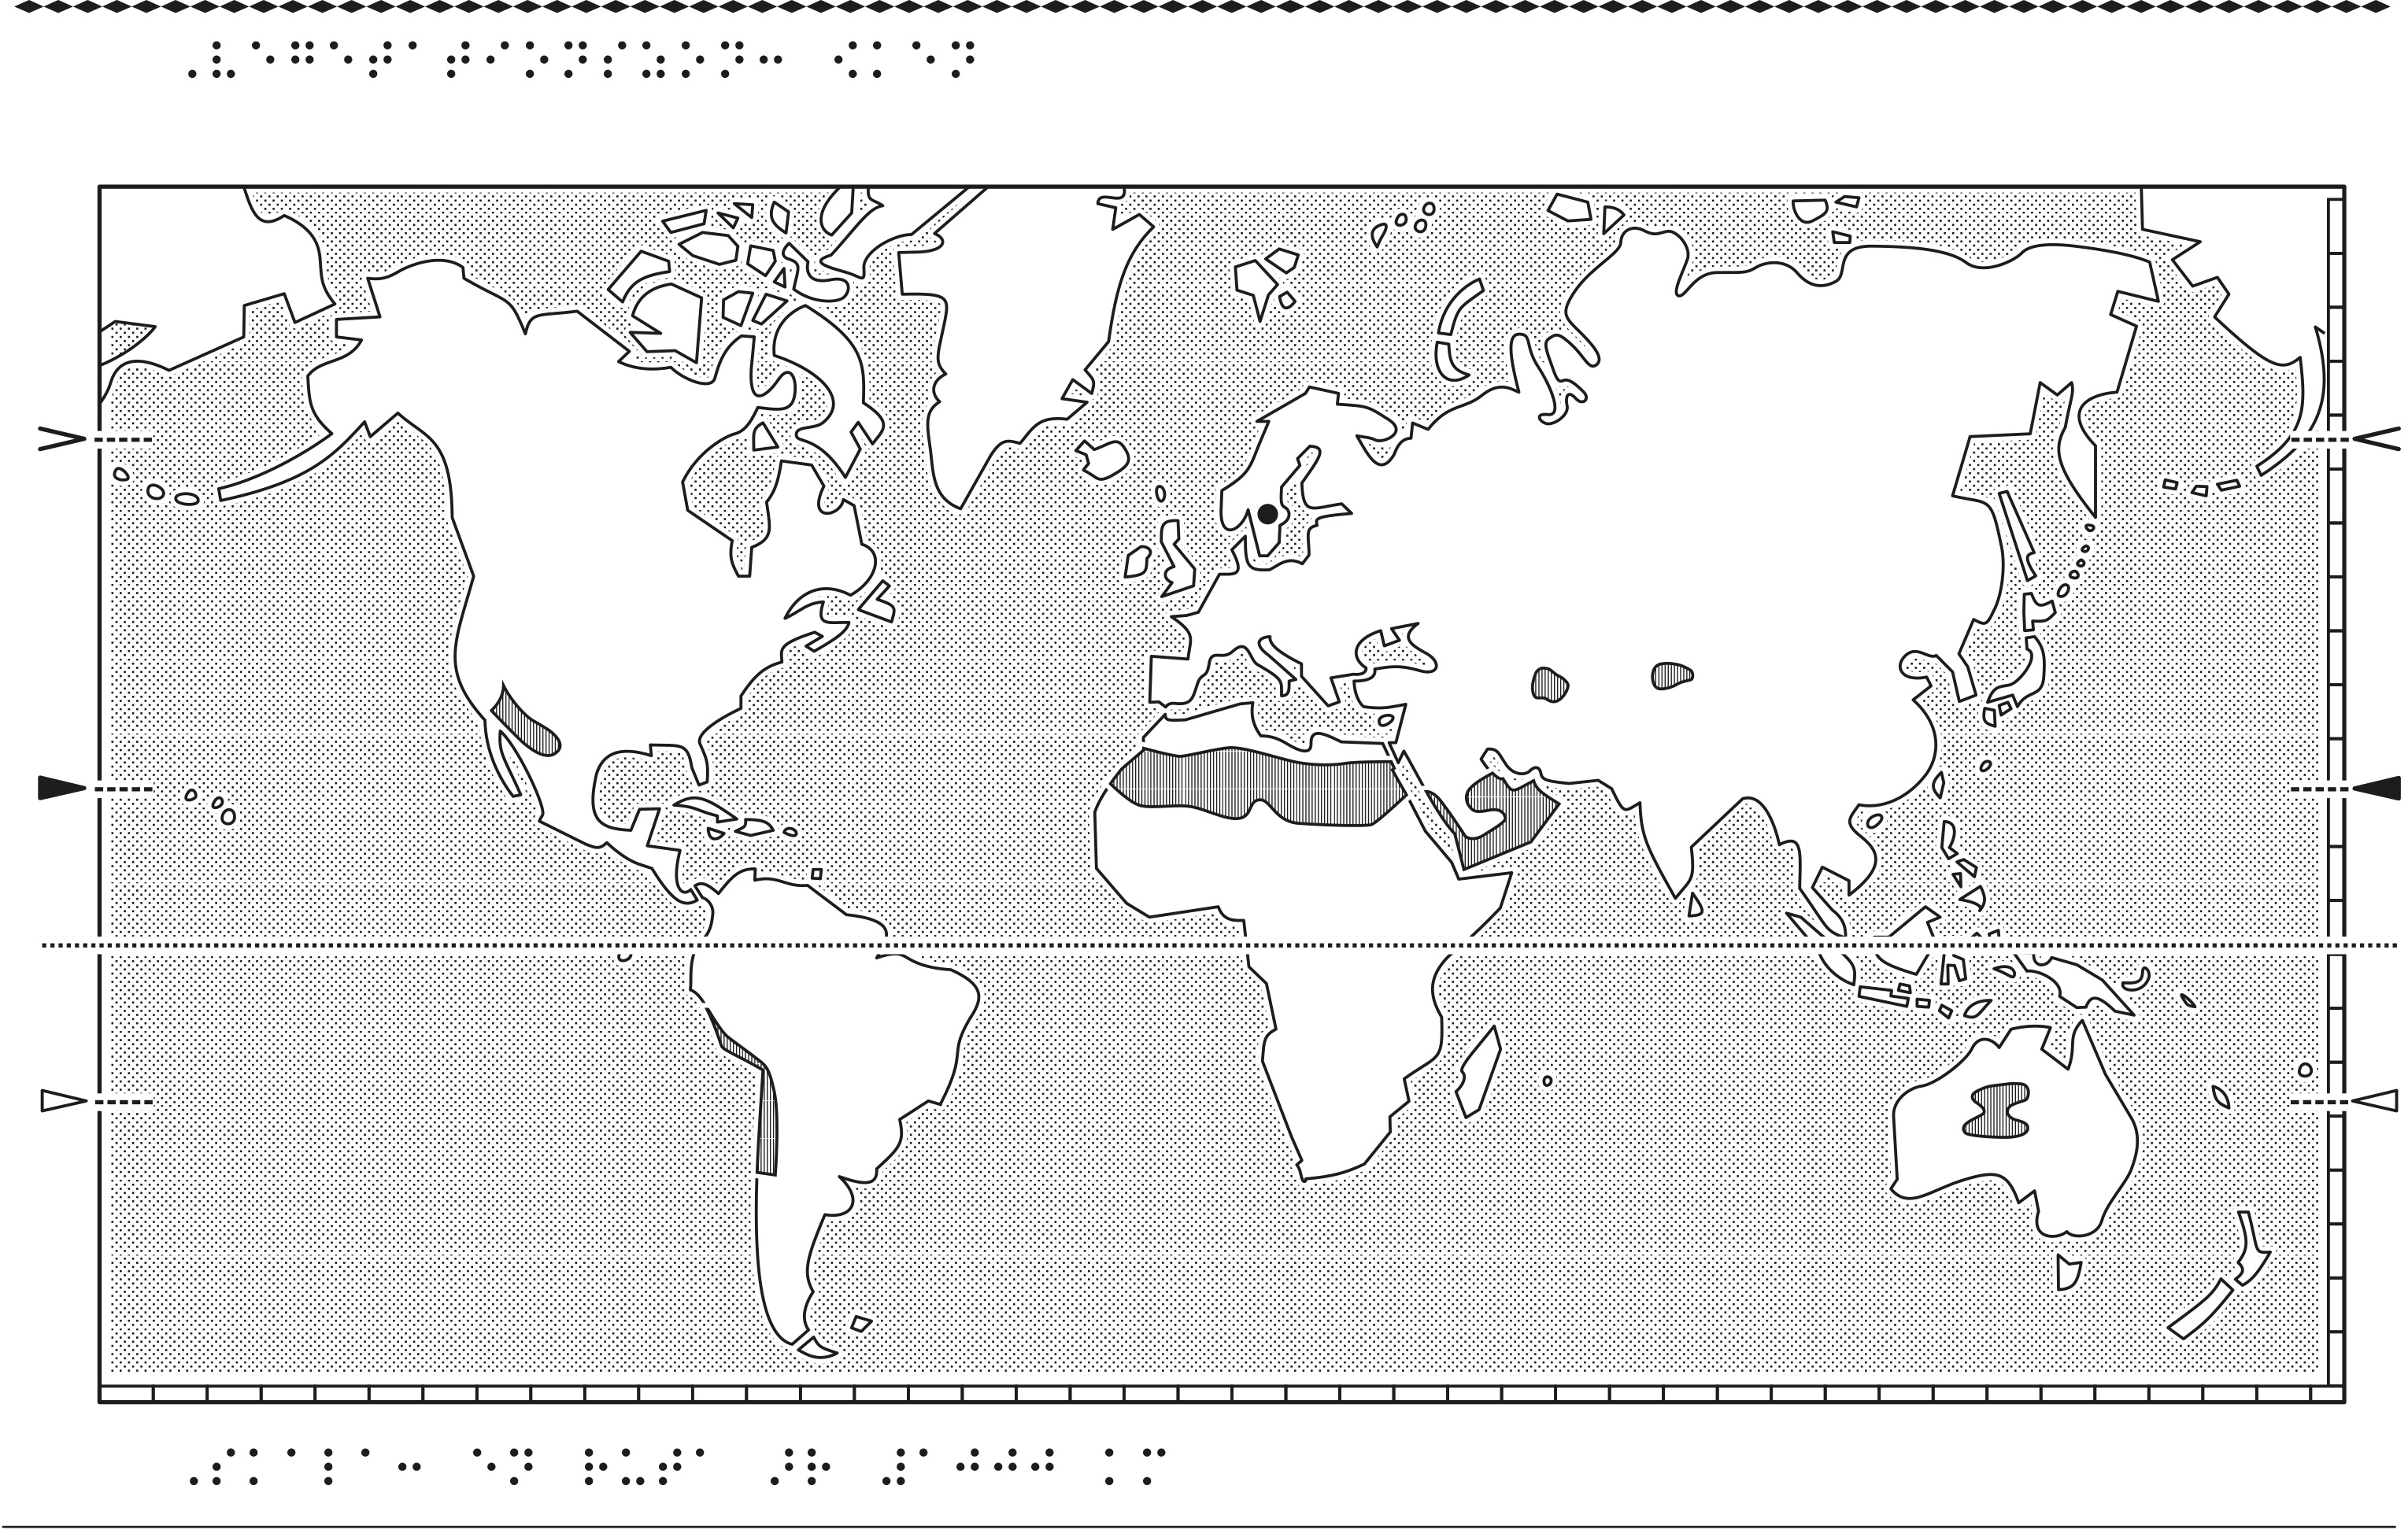 Världskarta i relief med öken markerat.